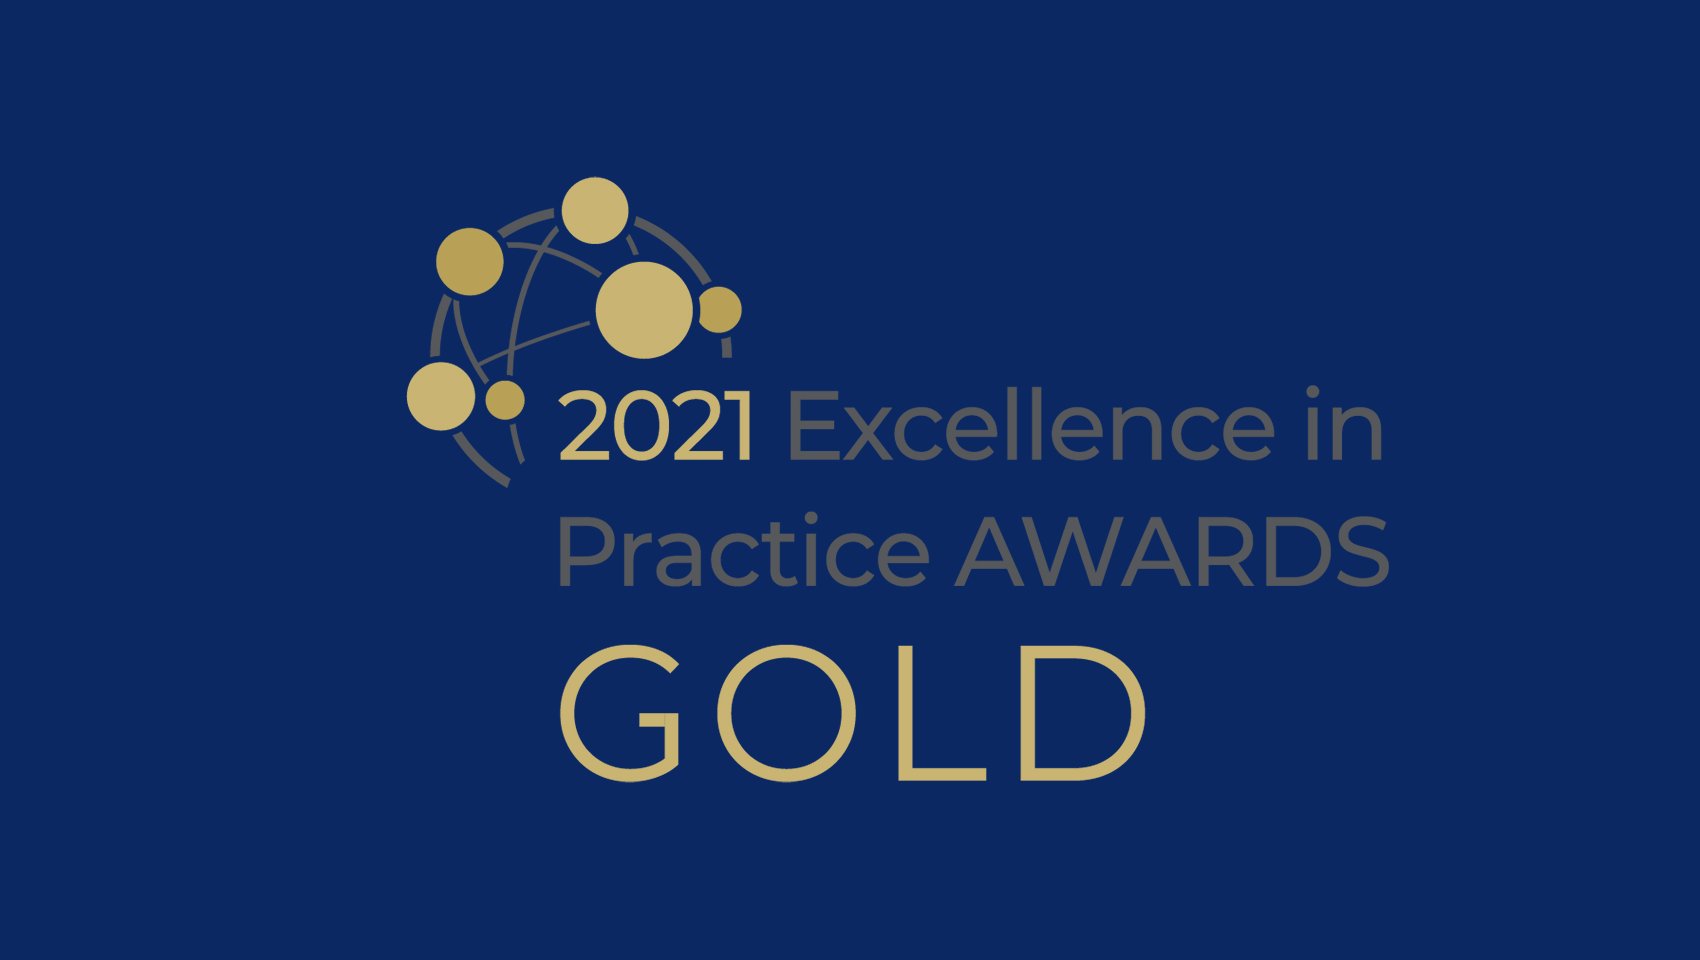 EFMD 2021 Excellence in practice awards gold logo on blue background 